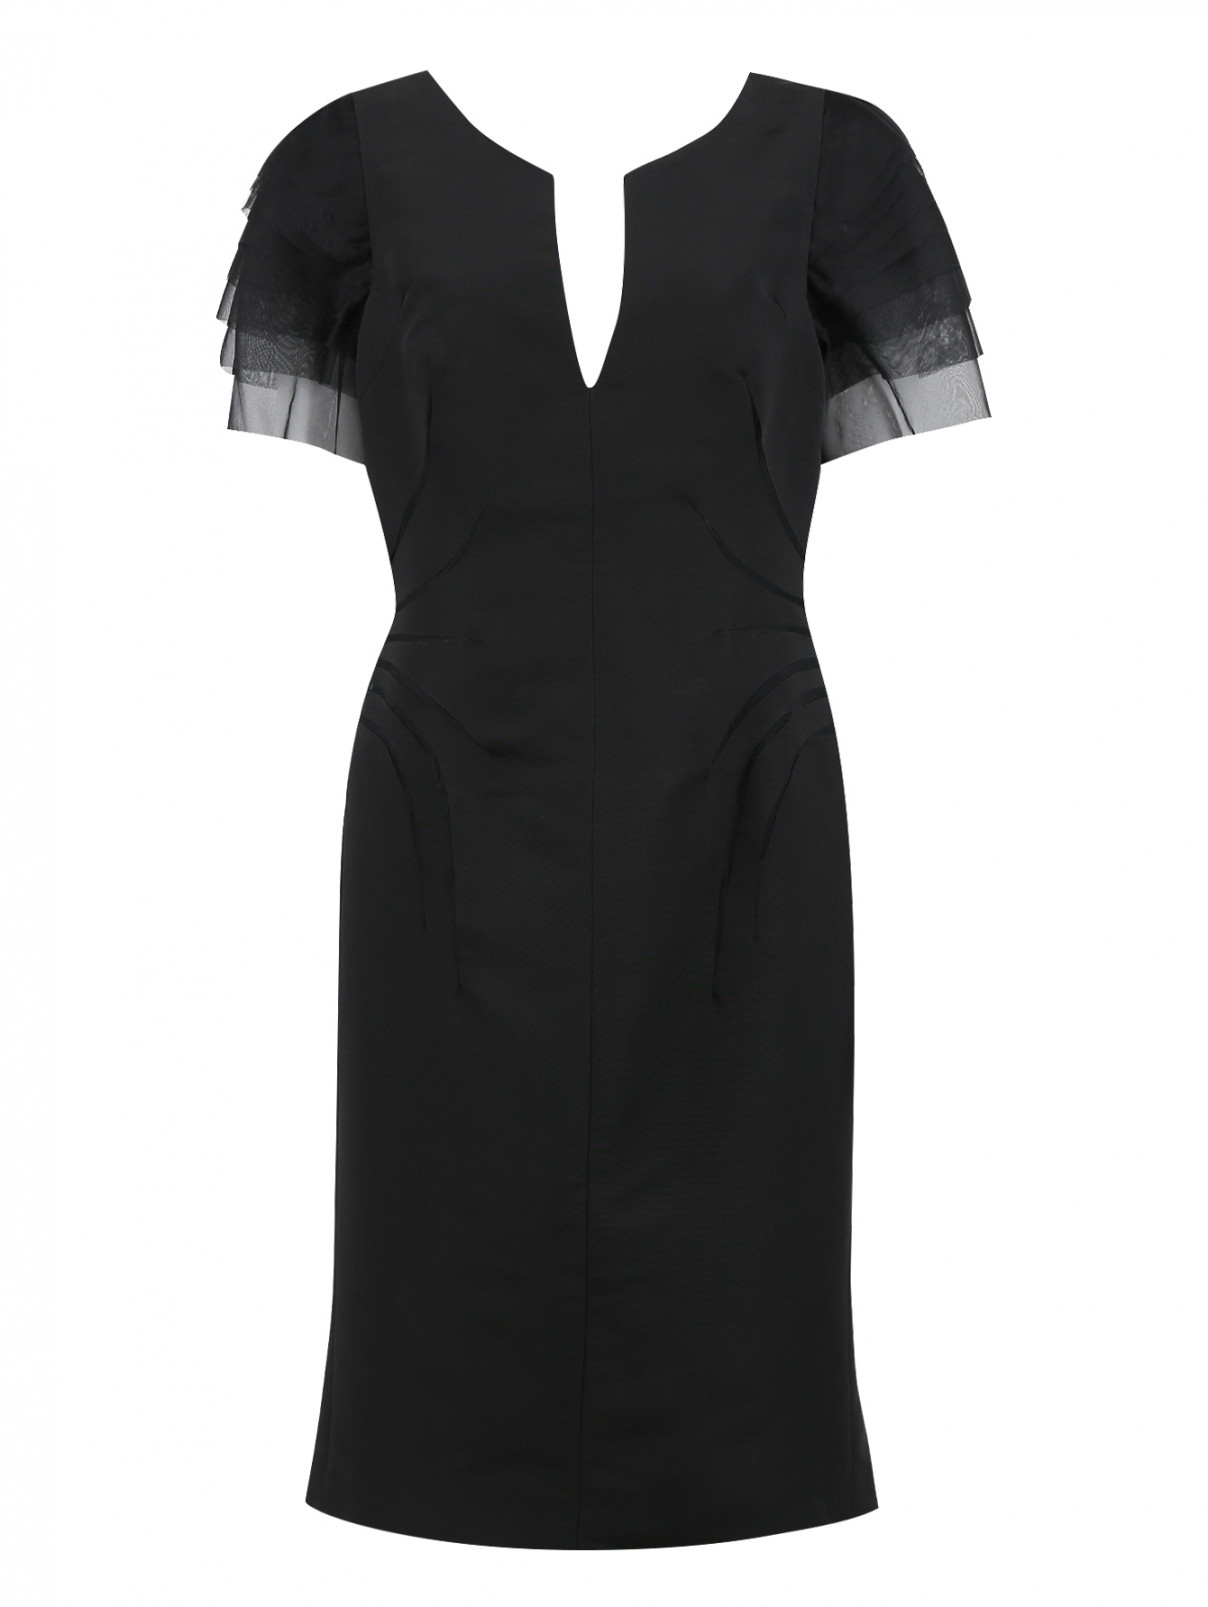 Платье-футляр с короткими рукавами и драпировкой Zac Posen  –  Общий вид  – Цвет:  Черный